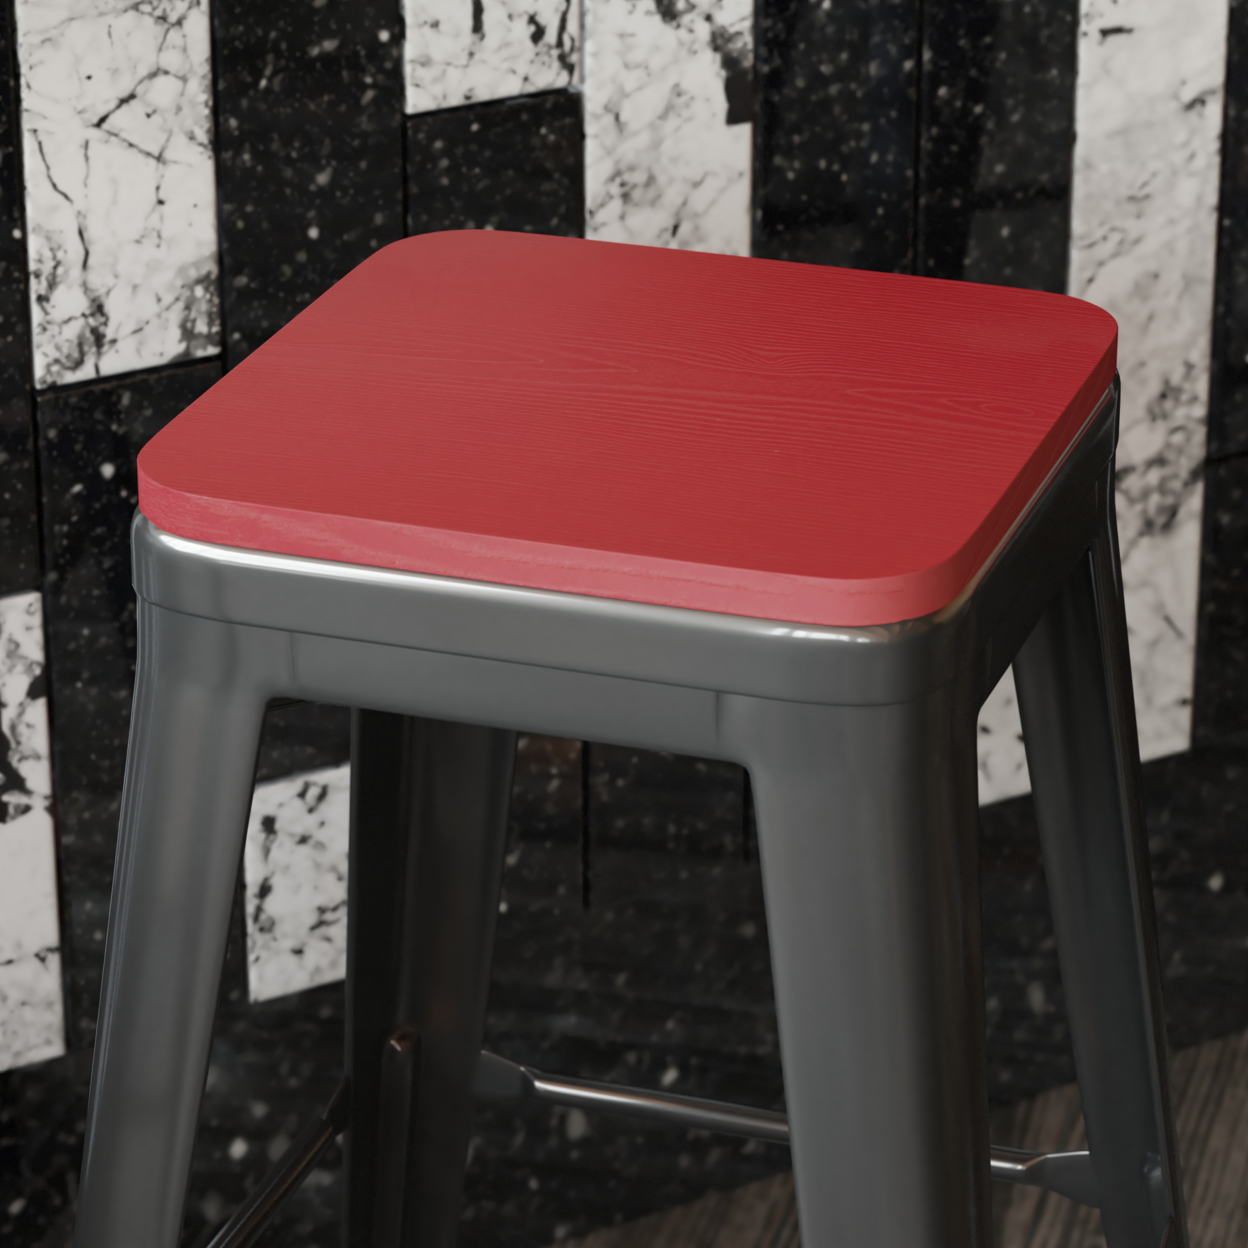 4 Piece Polyresin Chair Seats, Textured Design, Dark Red